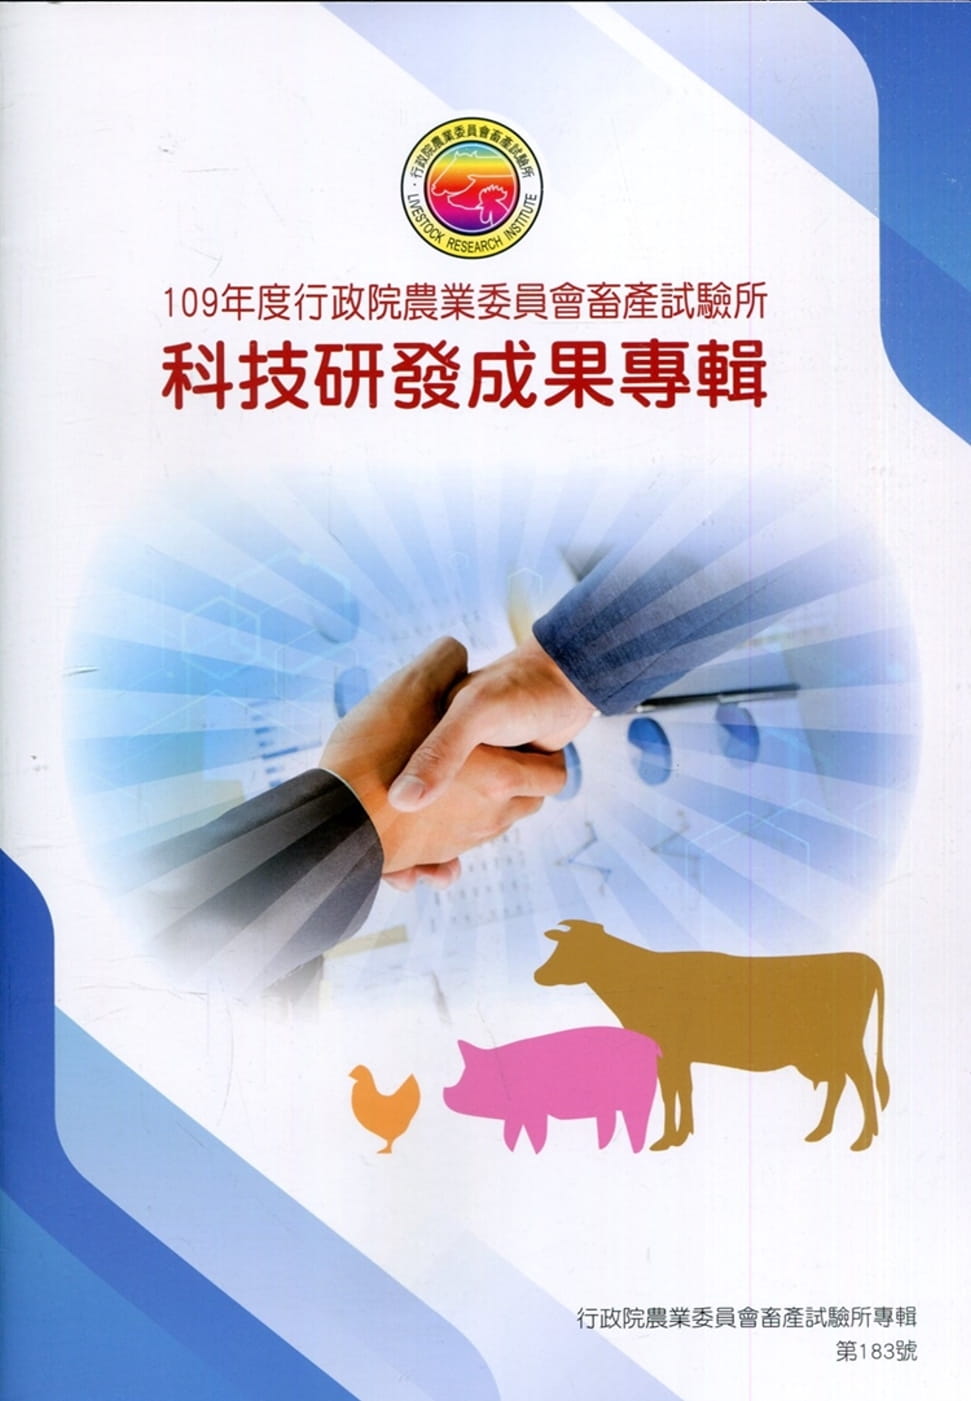 109年度行政院農業委員會畜產試驗所科技研發成果專輯